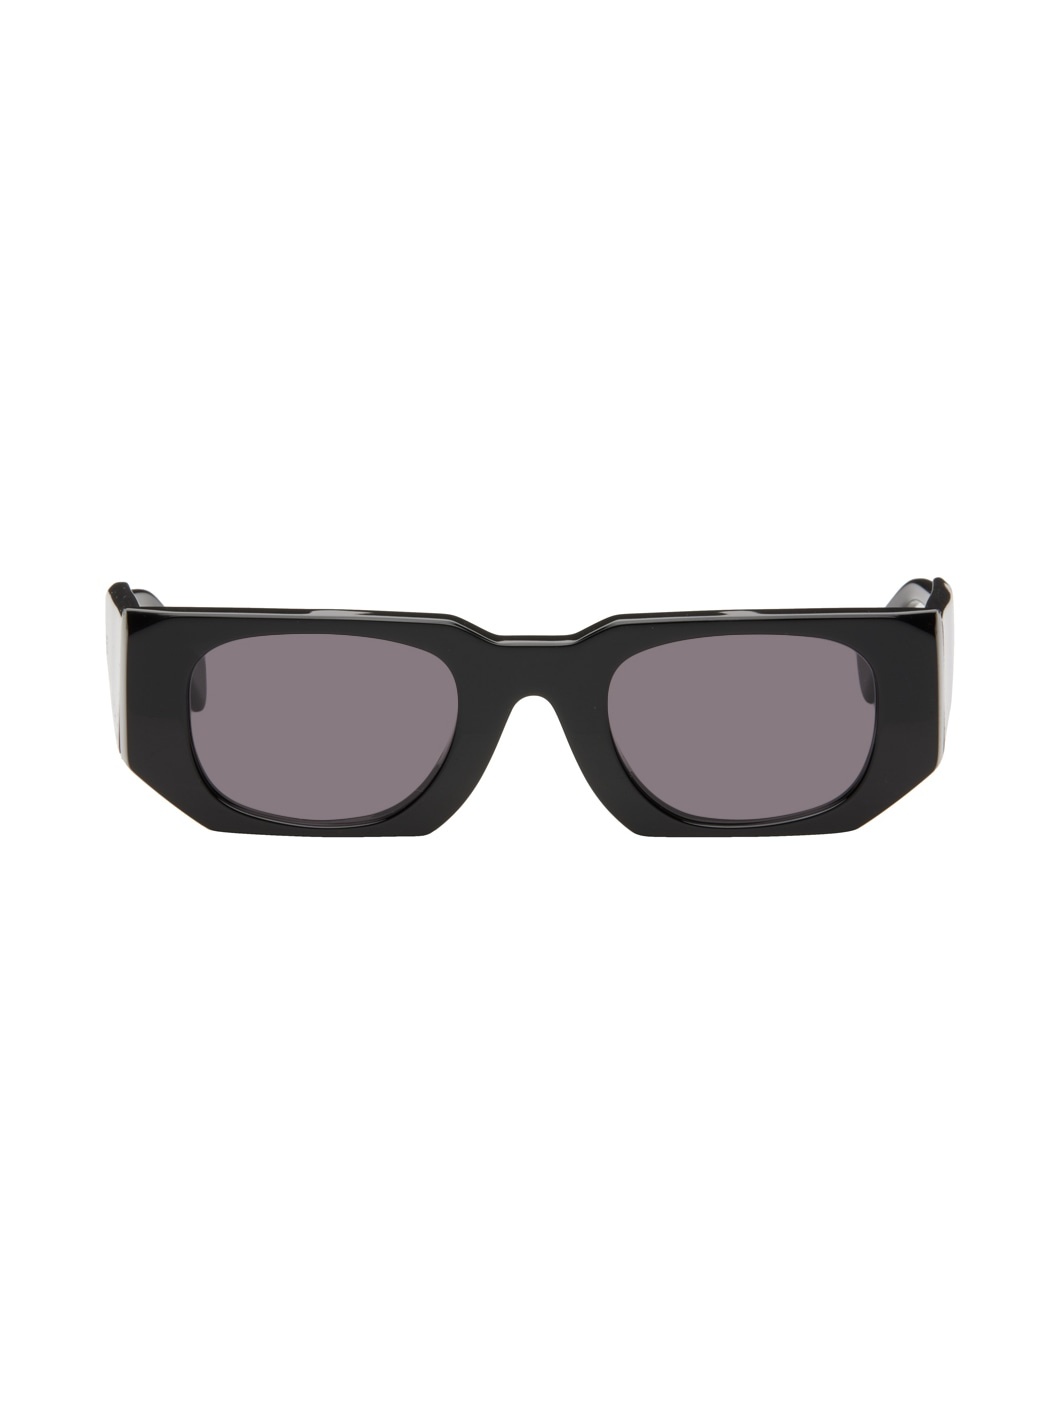 Black U8 Sunglasses - 1